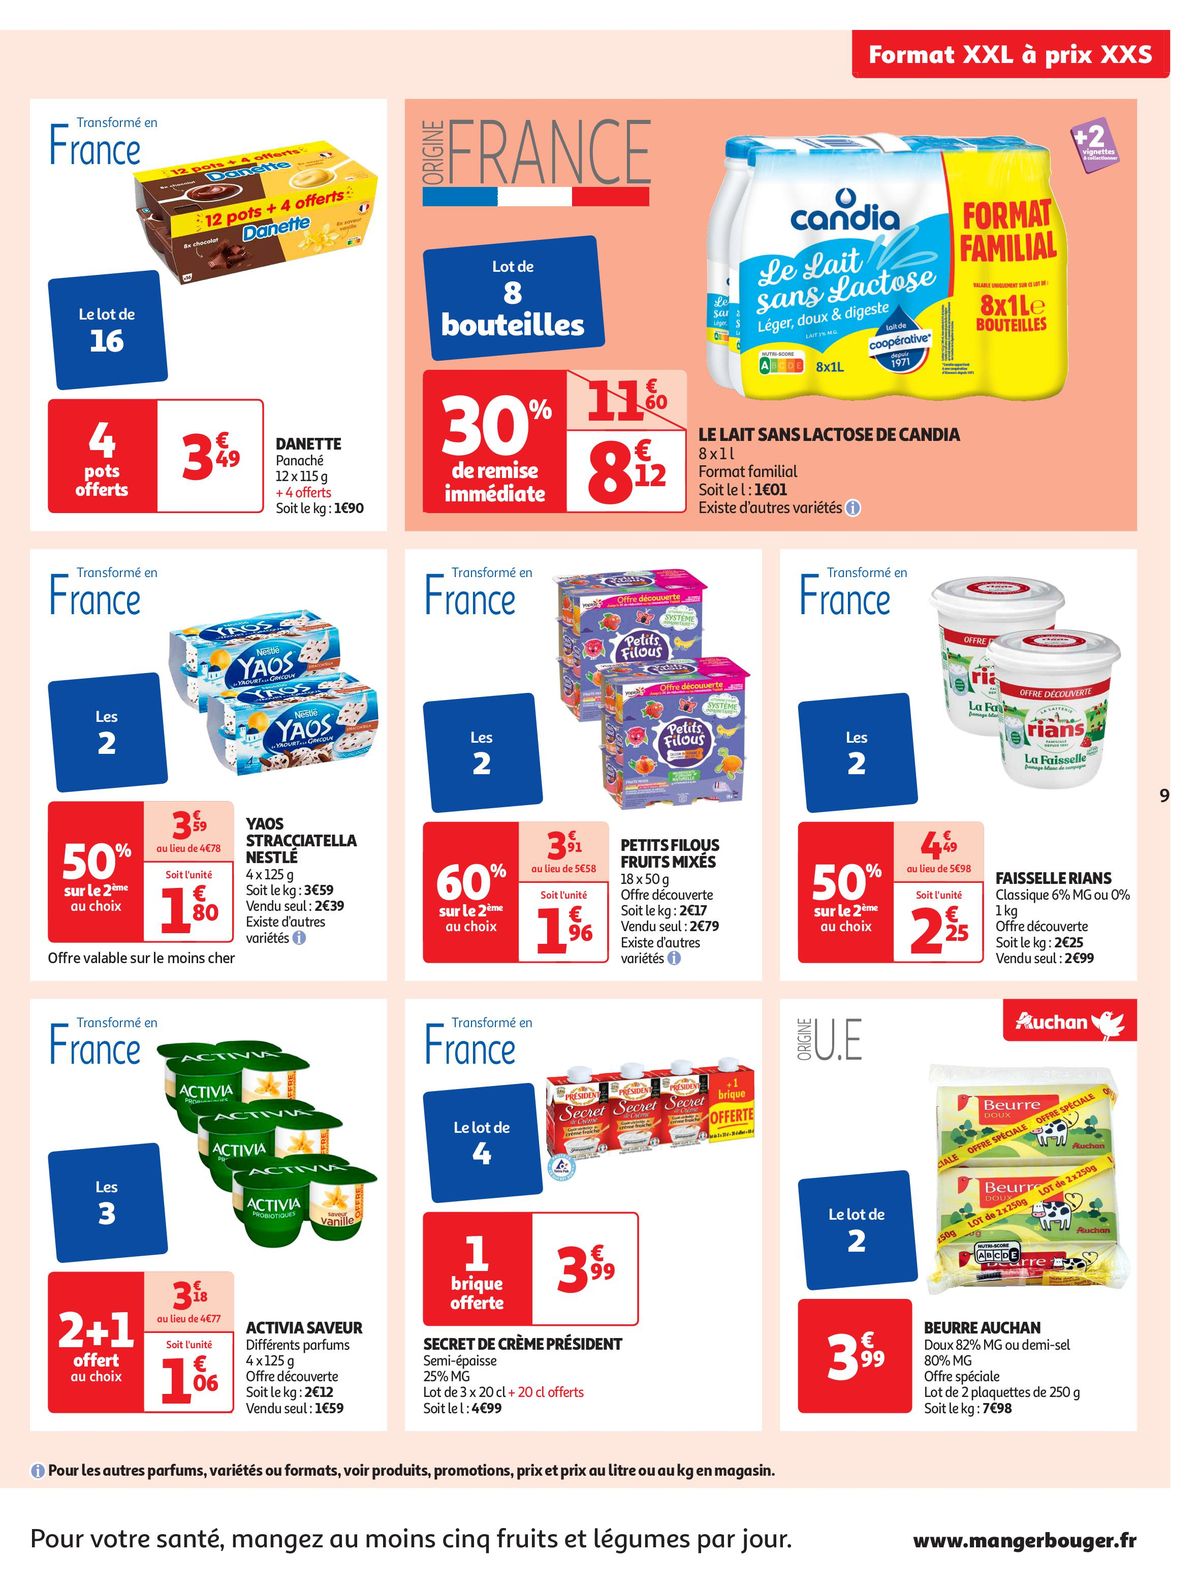 Catalogue Format XXL à prix XXS dans votre supermarché, page 00009